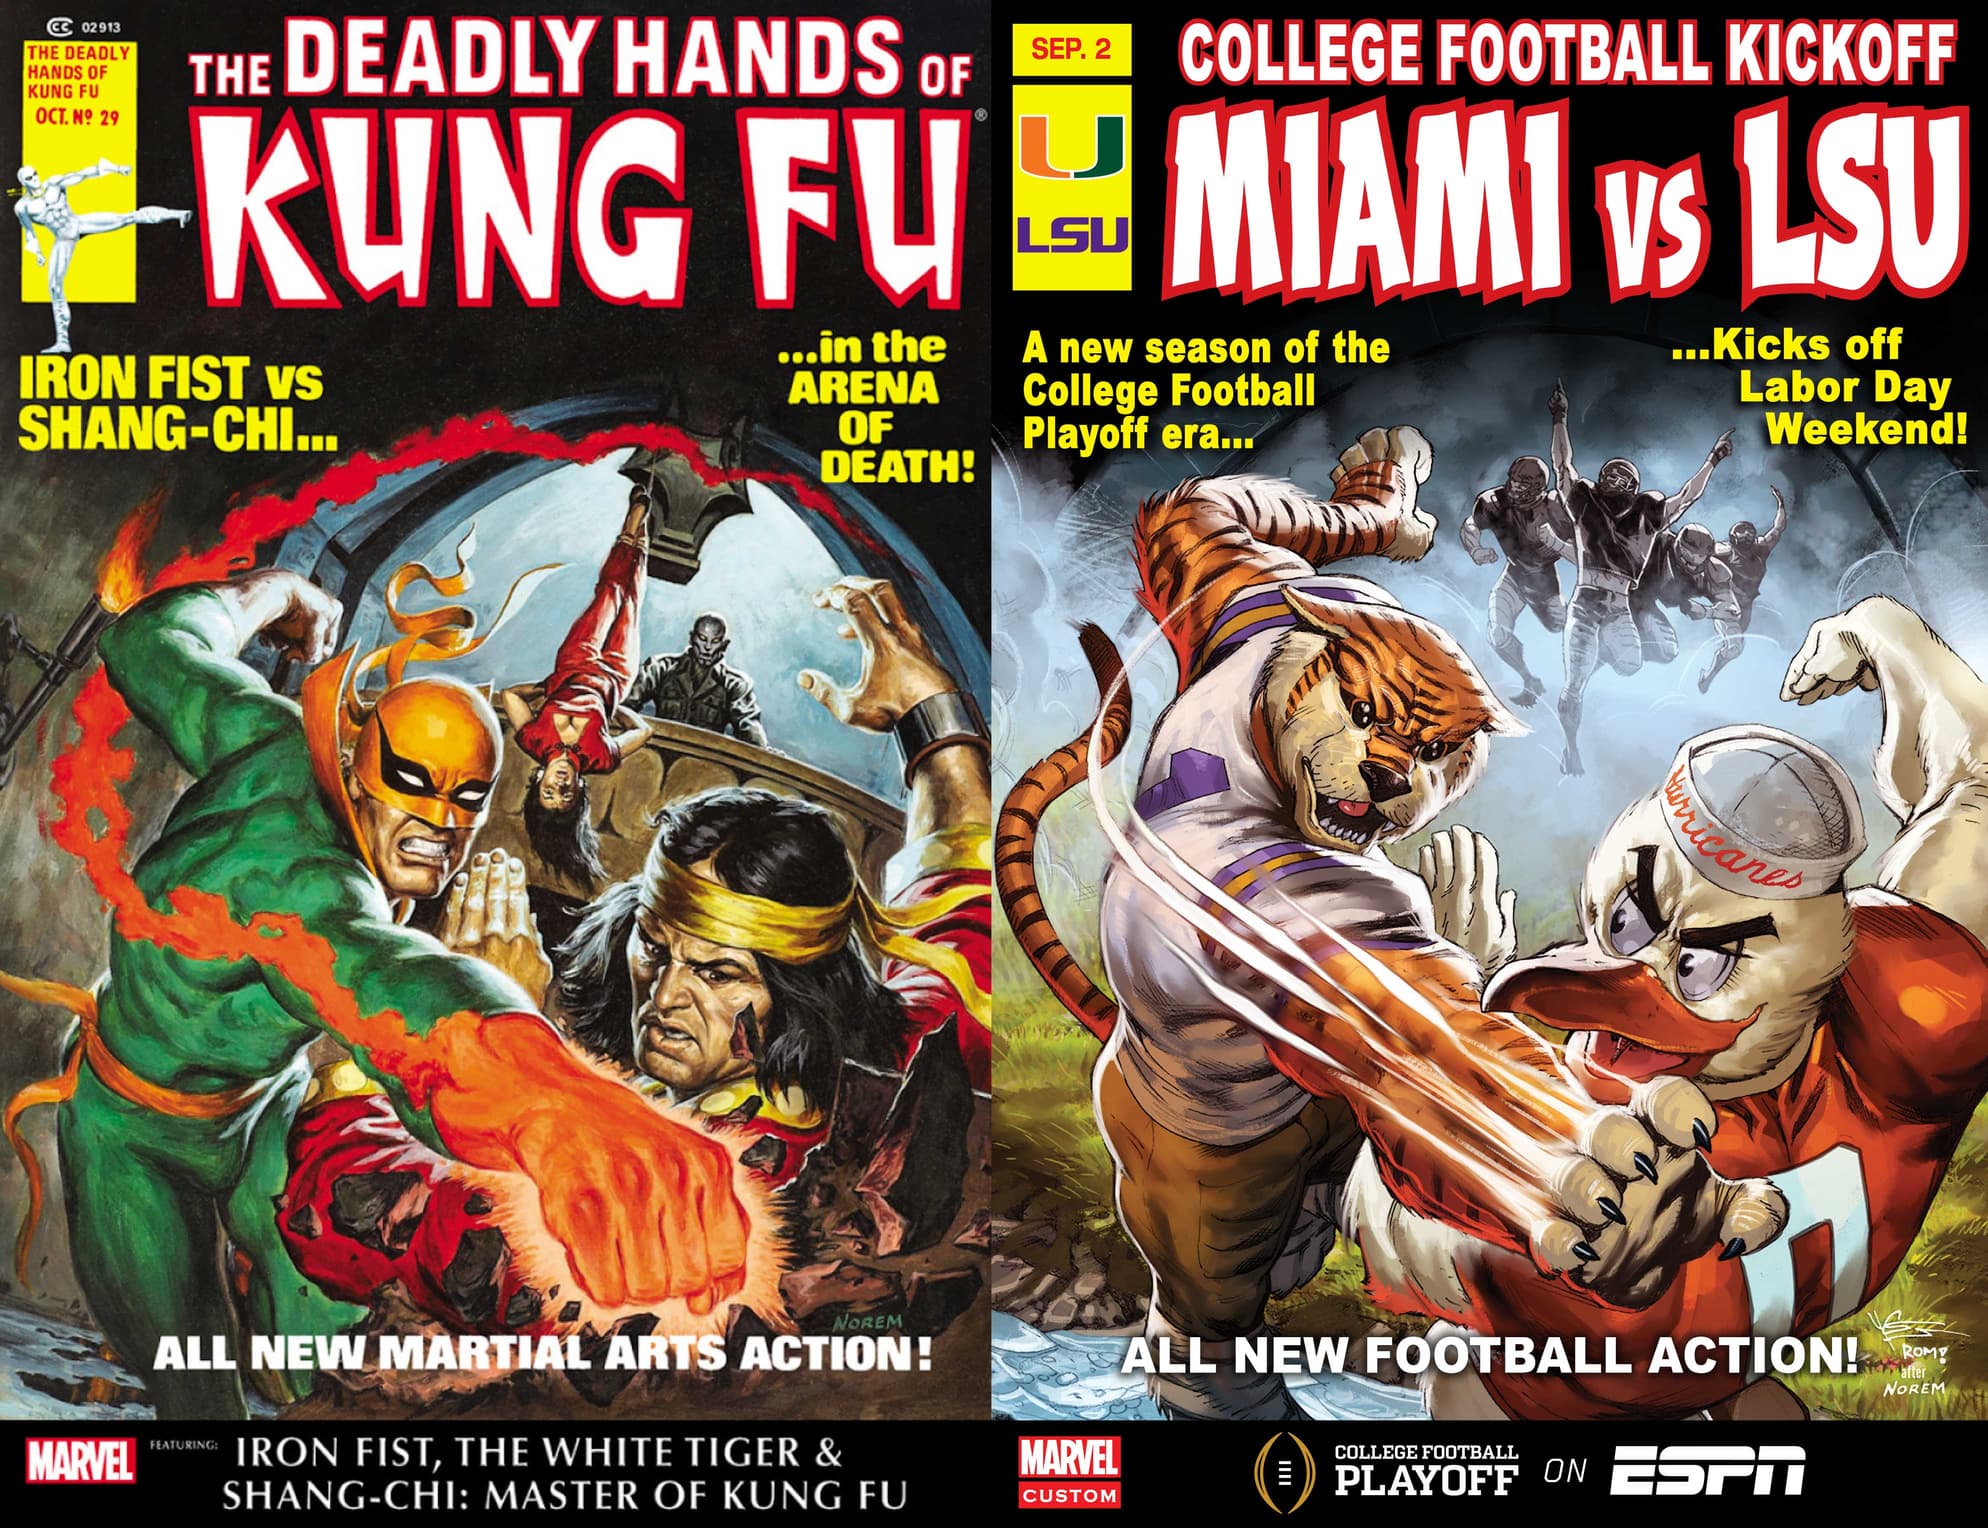 LSU vs Miami mascot cover